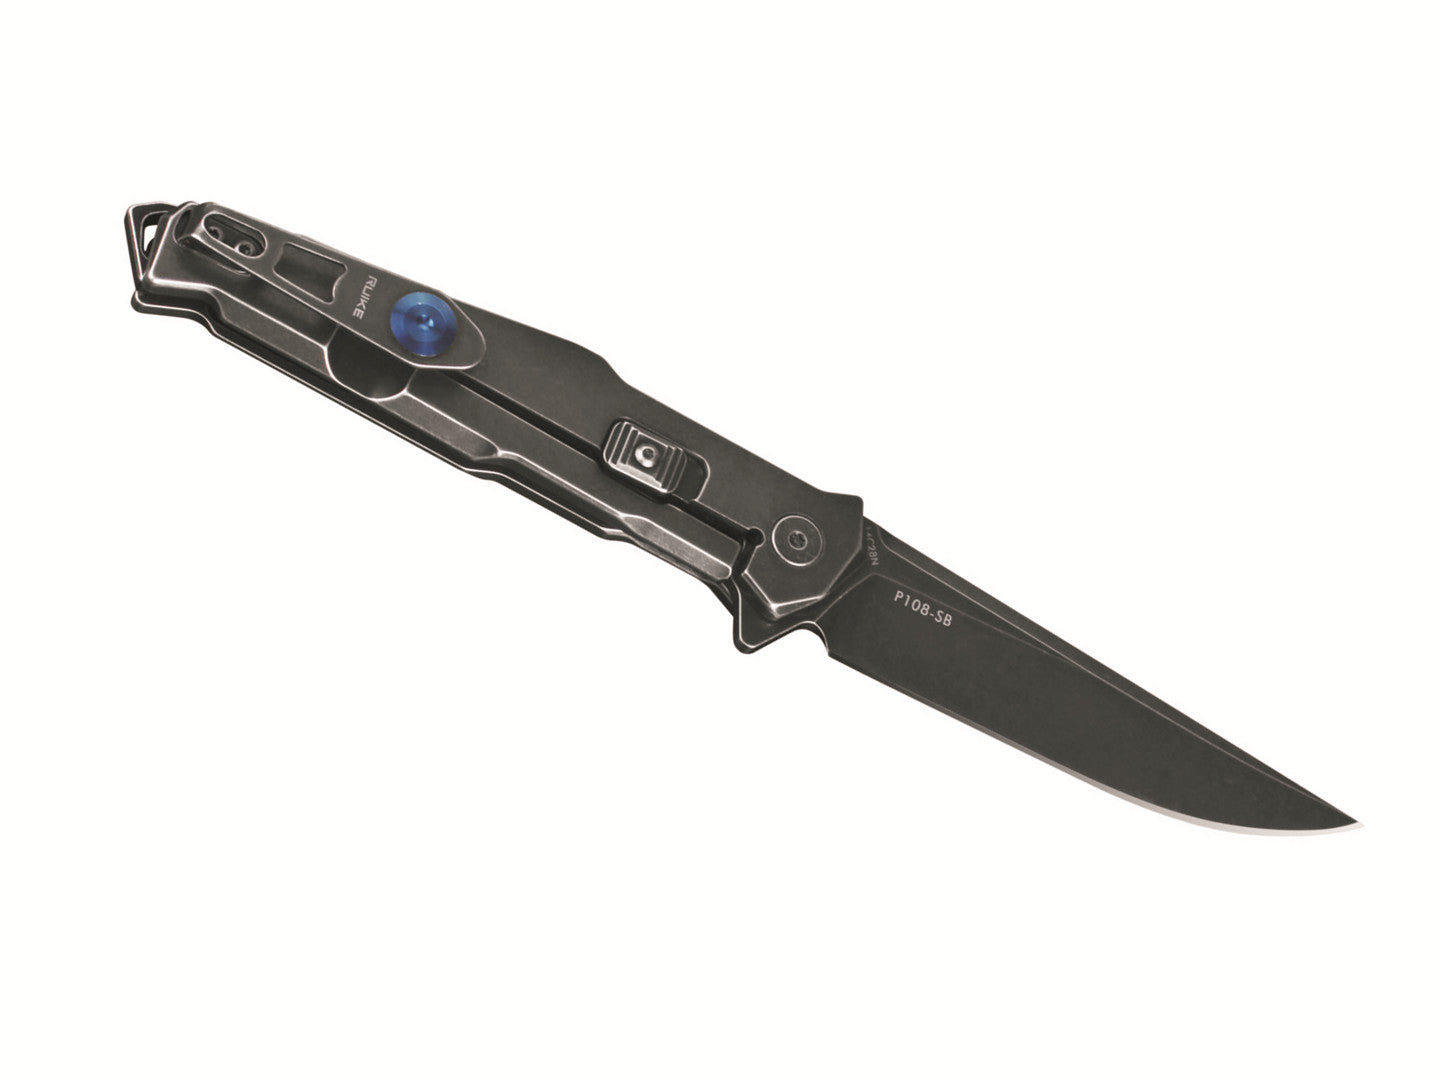 Ruike P108-SB Stonewash Folding Knife – Black